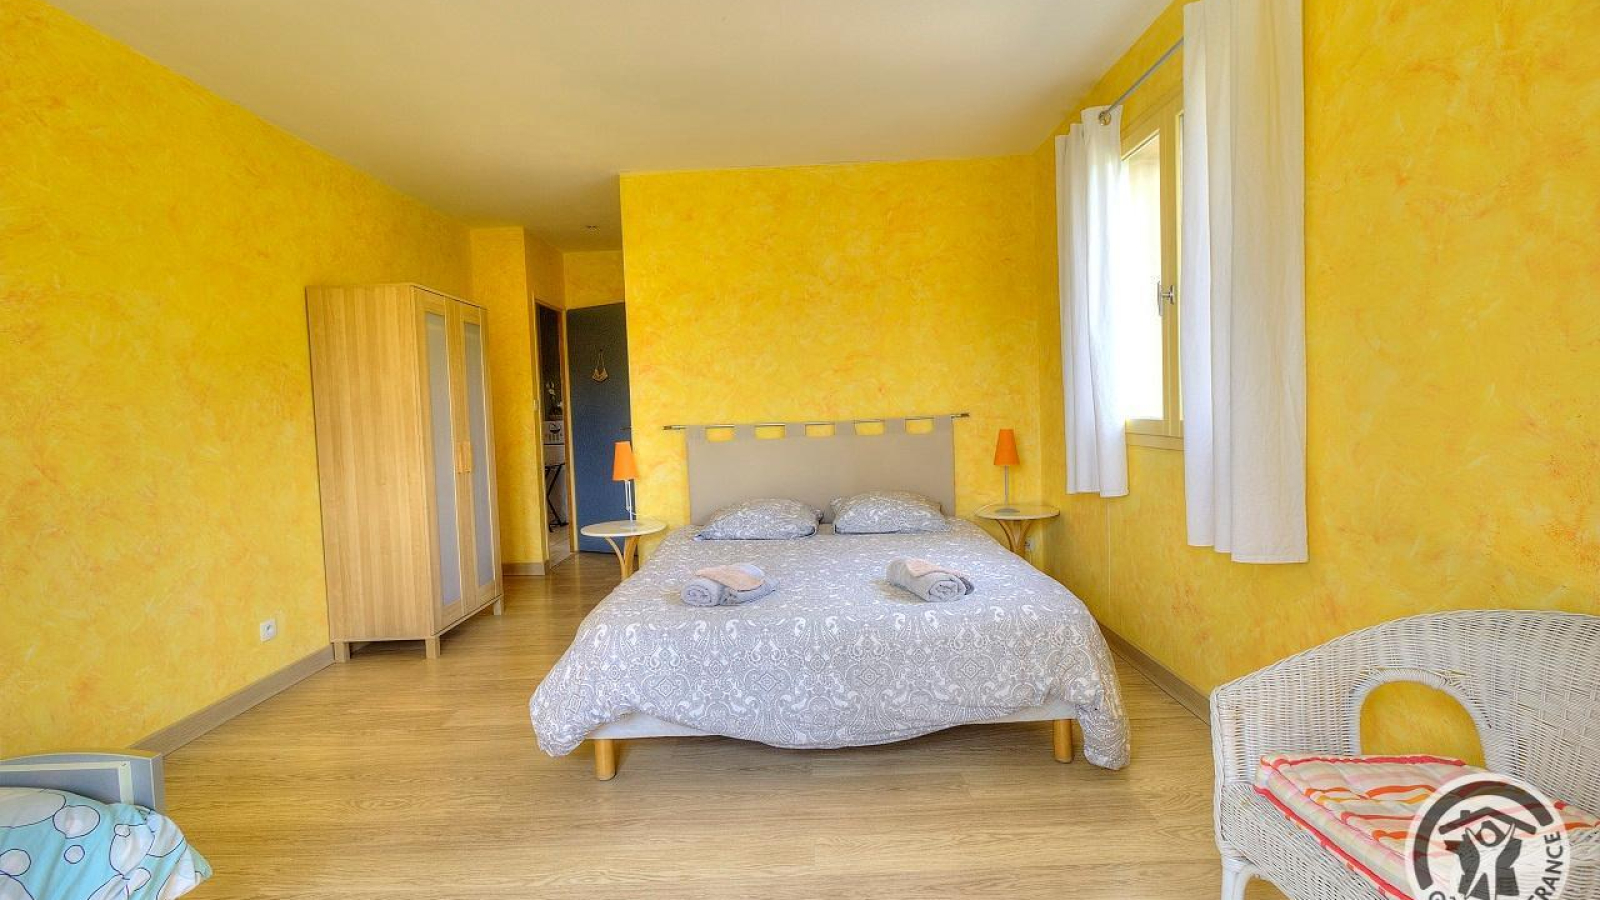 Chambres d'Hôtes chez le Vigneron 'Domaine Dumas' à TERNAND, dans le Beaujolais des Pierres Dorées - Rhône : la Chambre 'Orange' pour 3 personnes.